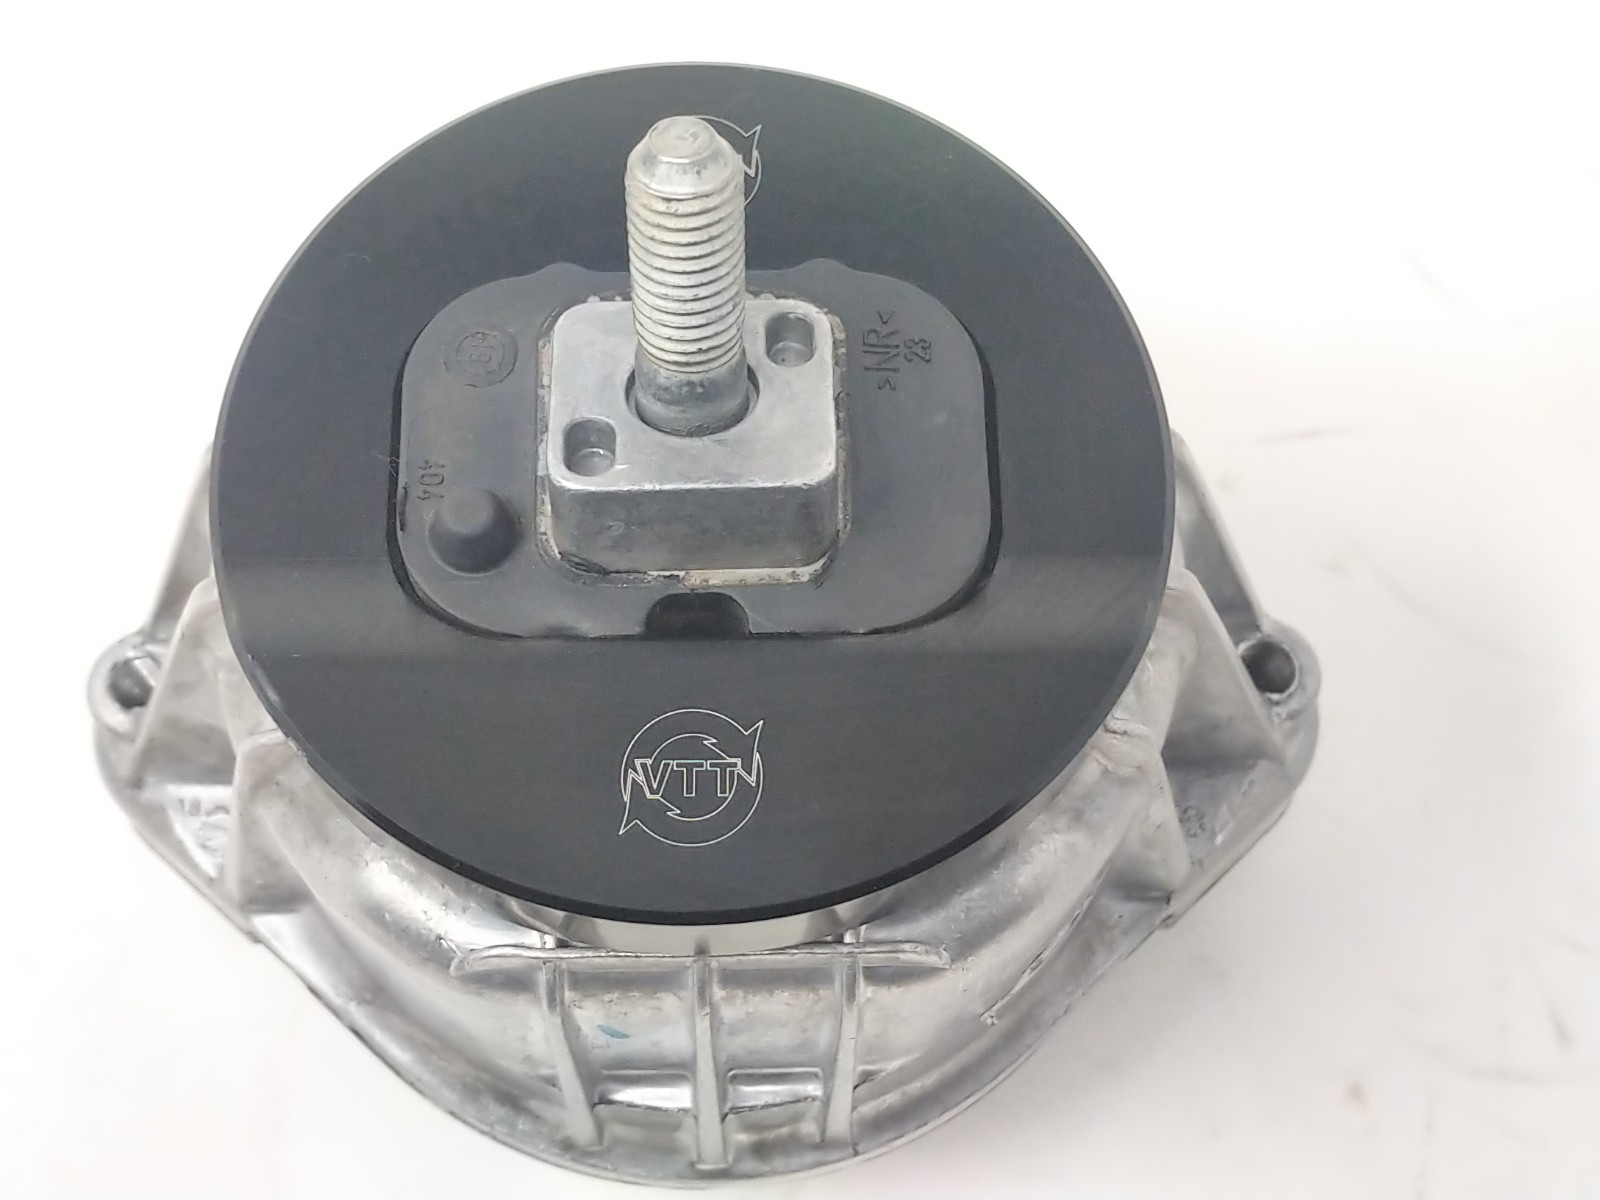 Mini-Auto DV 18E Dynamic motor mount #565 for Kemtron X503 